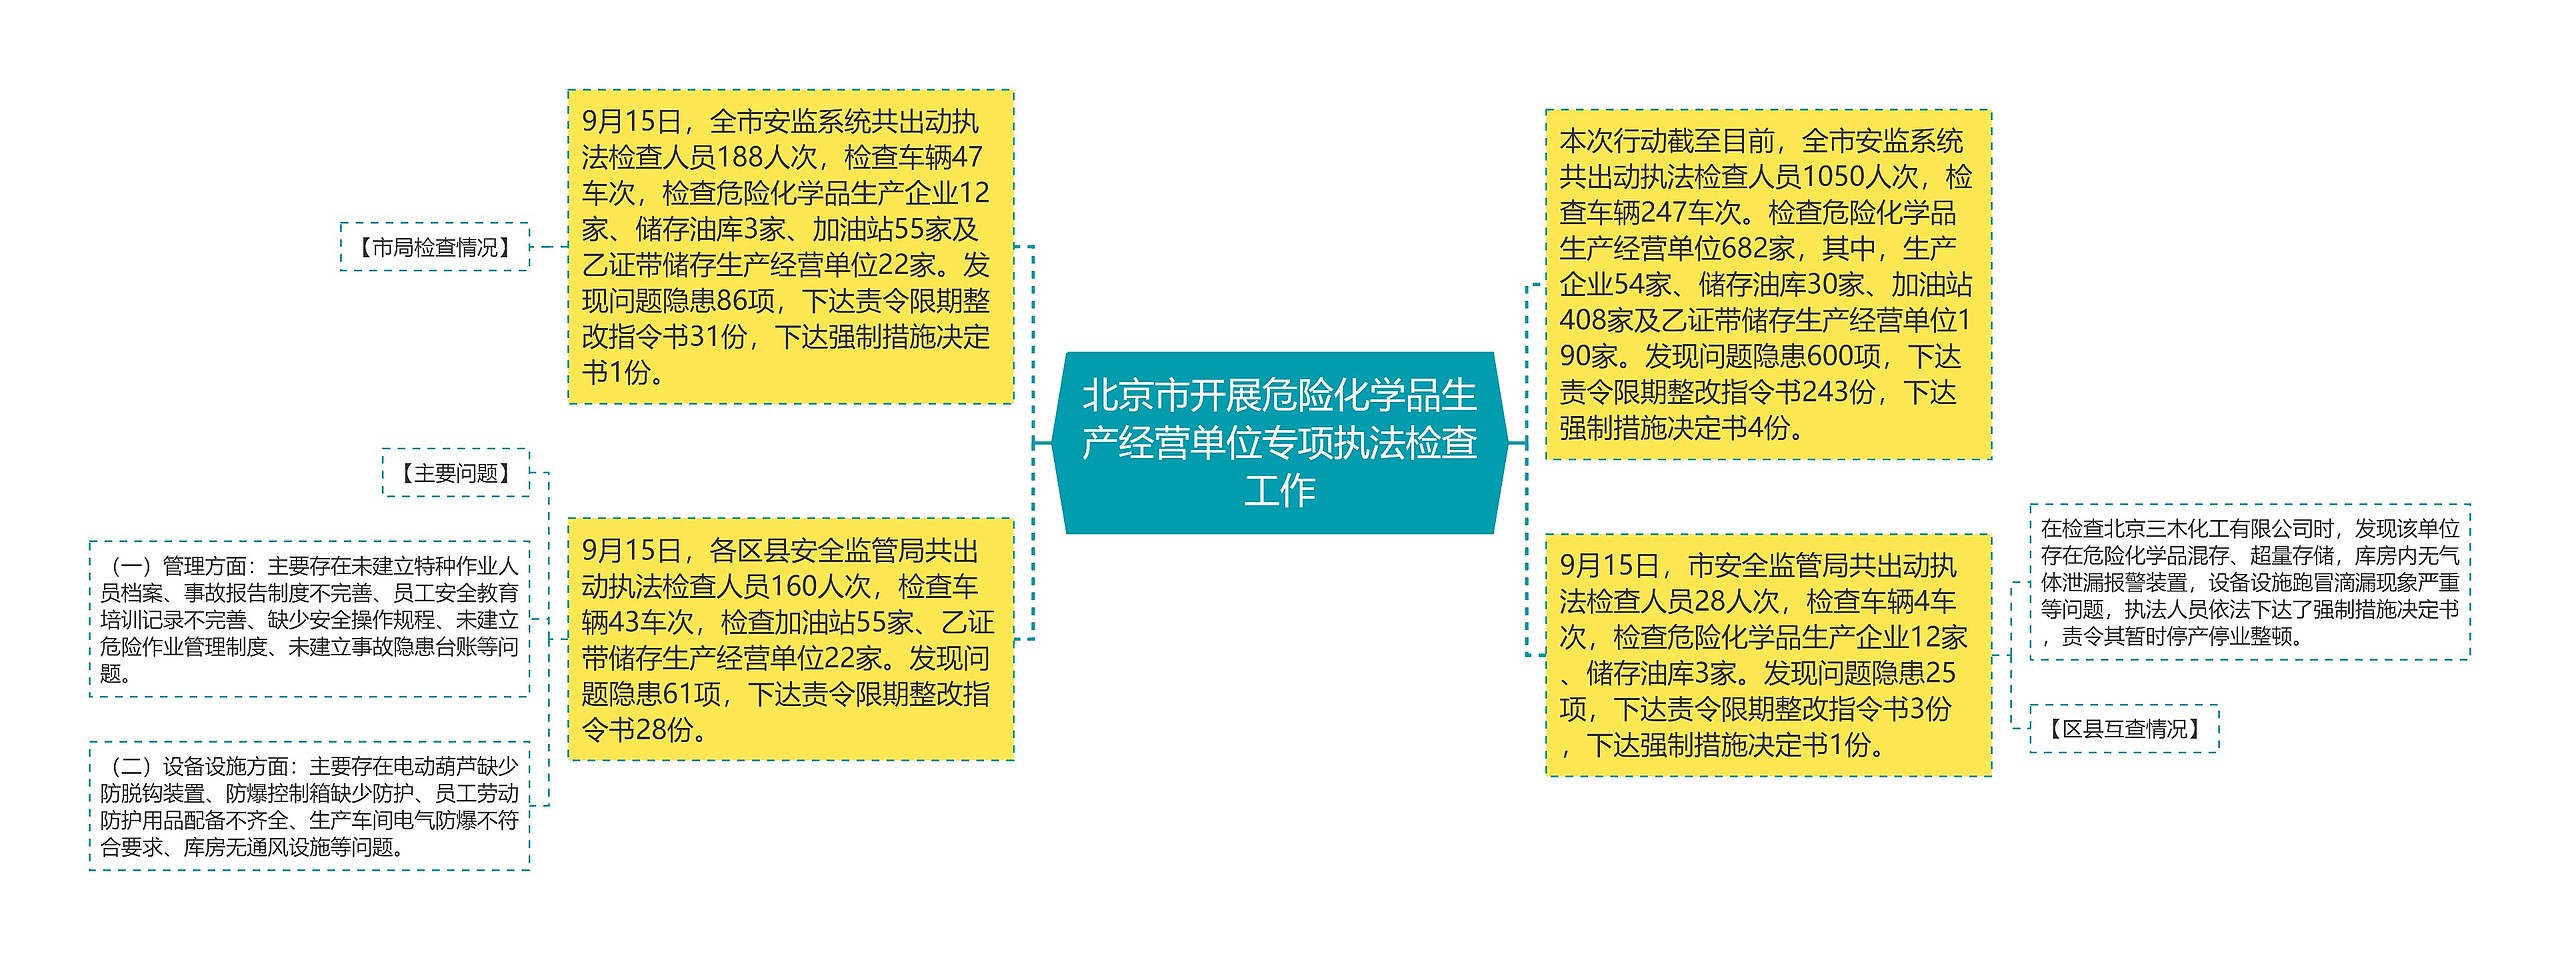 北京市开展危险化学品生产经营单位专项执法检查工作思维导图